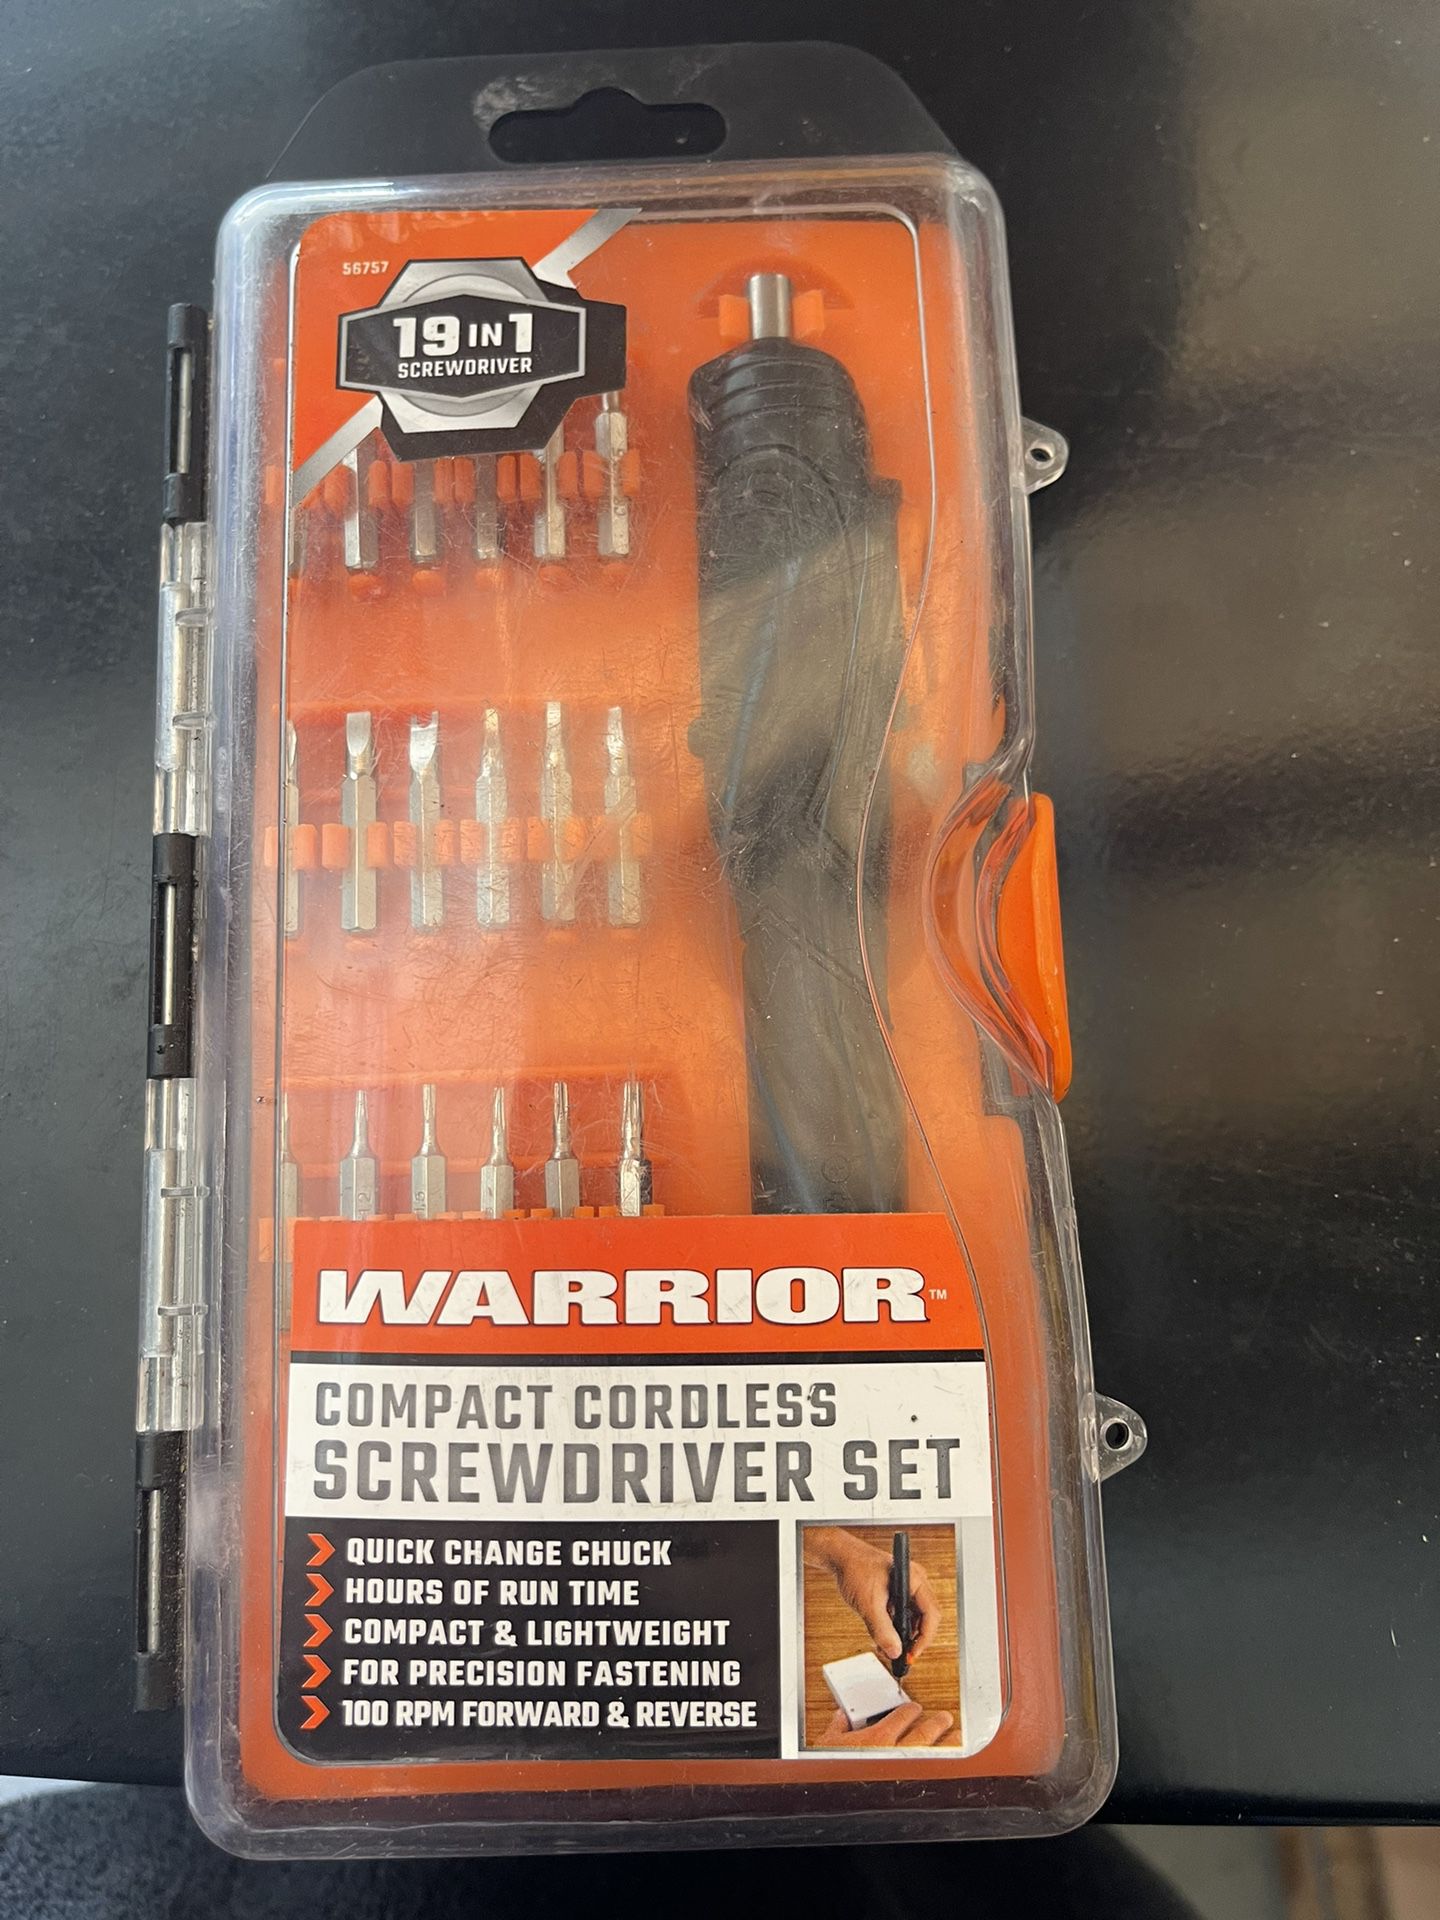 19 in 1 screwdriver set